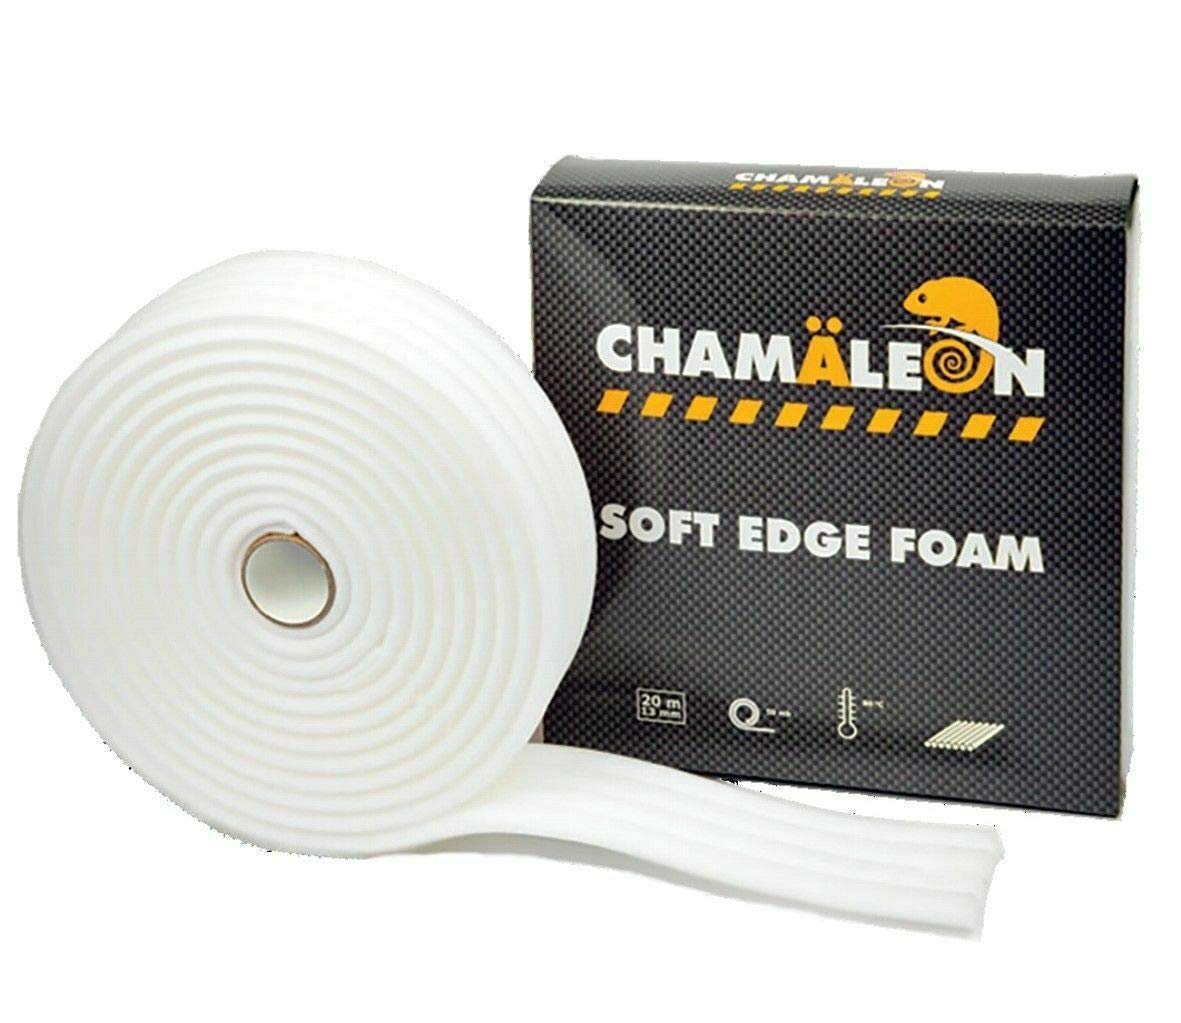 Chamäleon Masking Foam 20m Weiß SOFTTAPE 13mm 90°C KANTENSCHAUM Soft Edge Lack von Chamäleon